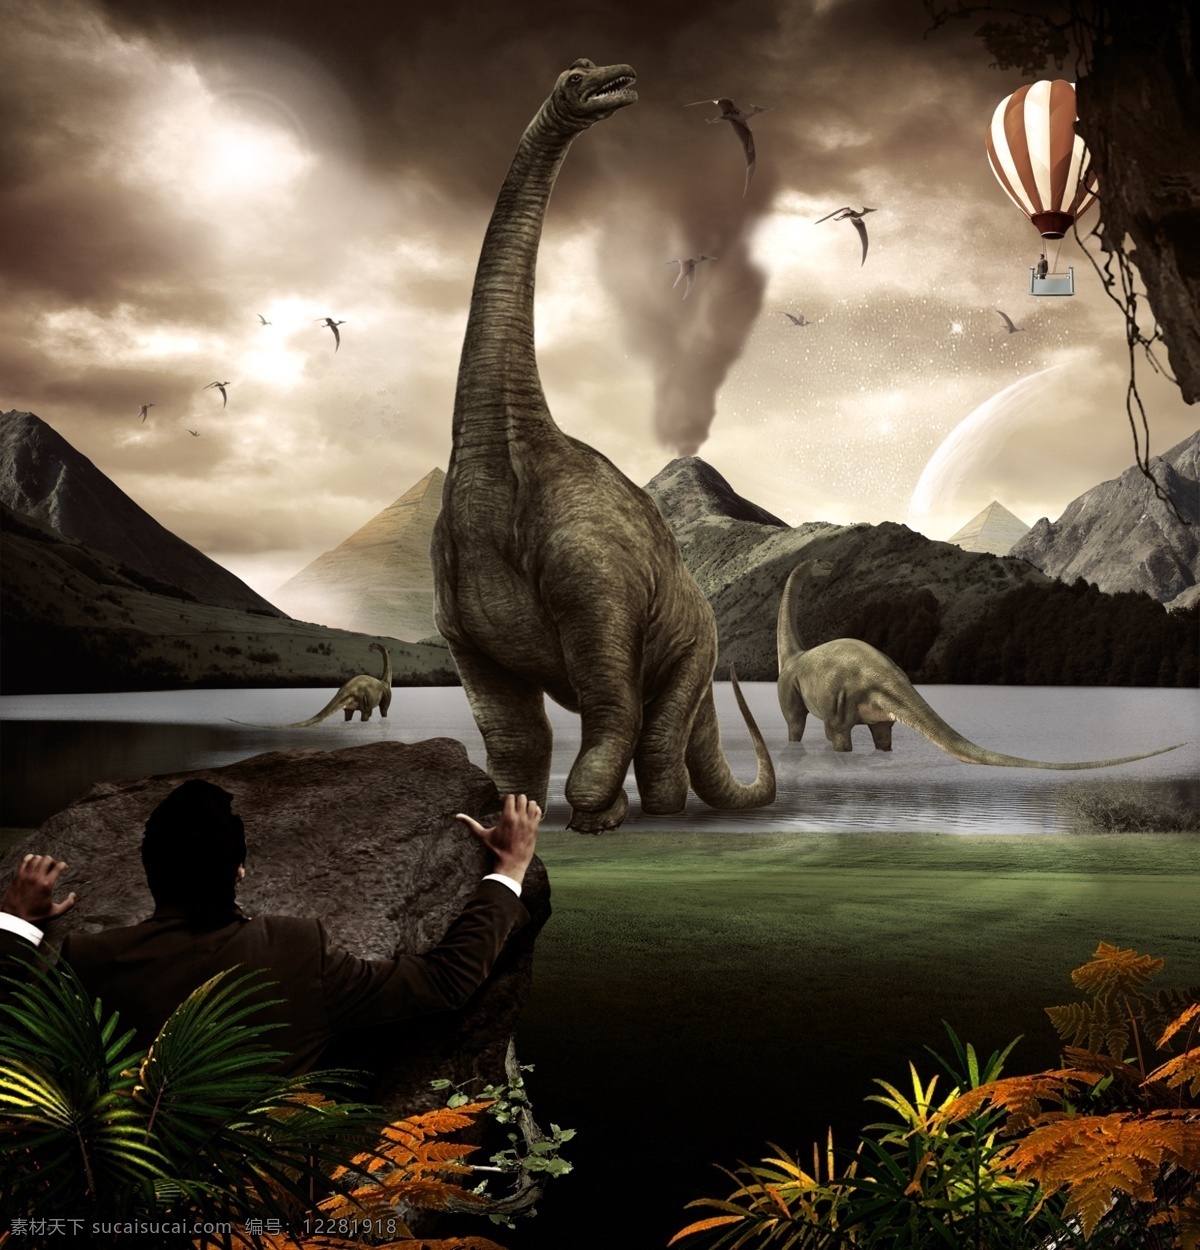 发现侏罗纪 发现 侏罗纪 恐龙 火山 湖 广告设计模板 源文件